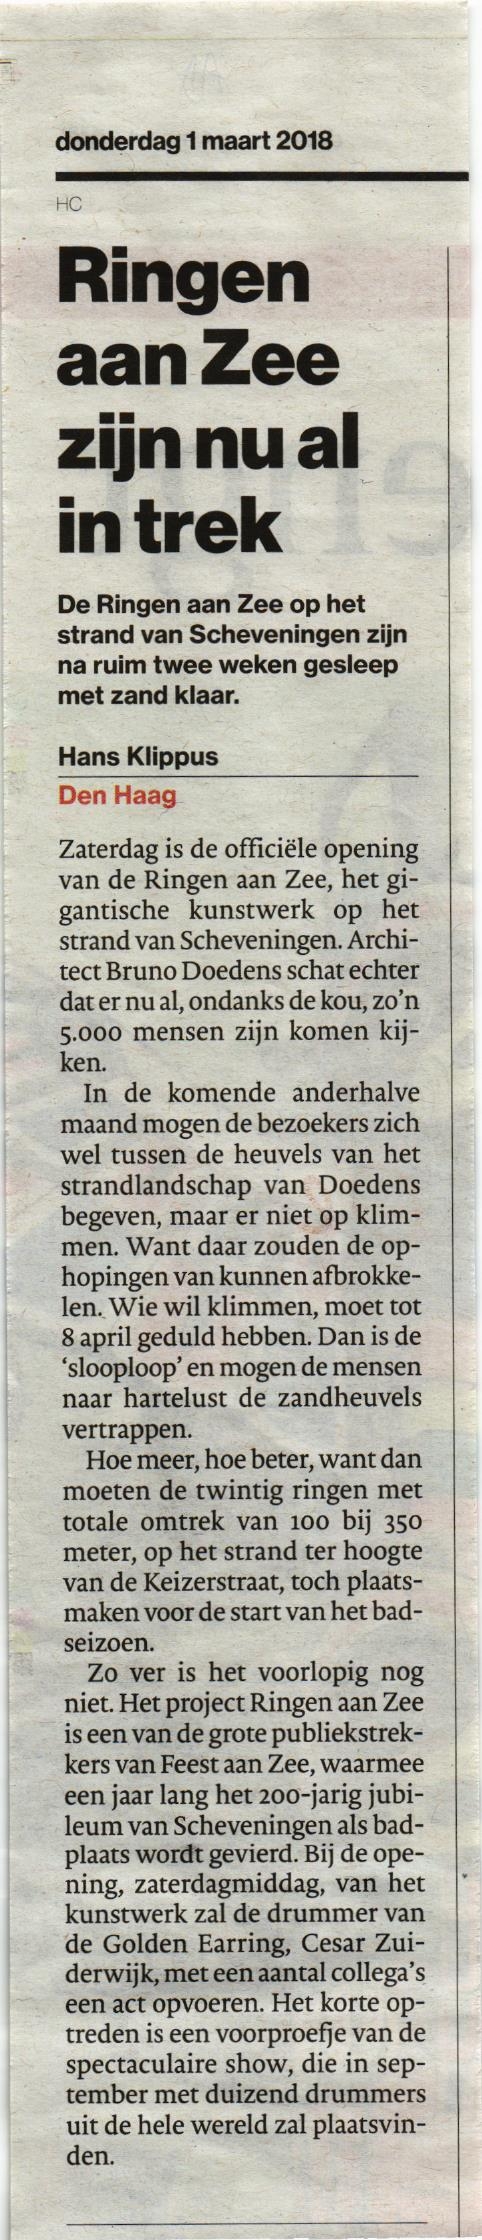 March 01, 2018 AD newspaper article Ringen aan Zee zijn nu al in trek